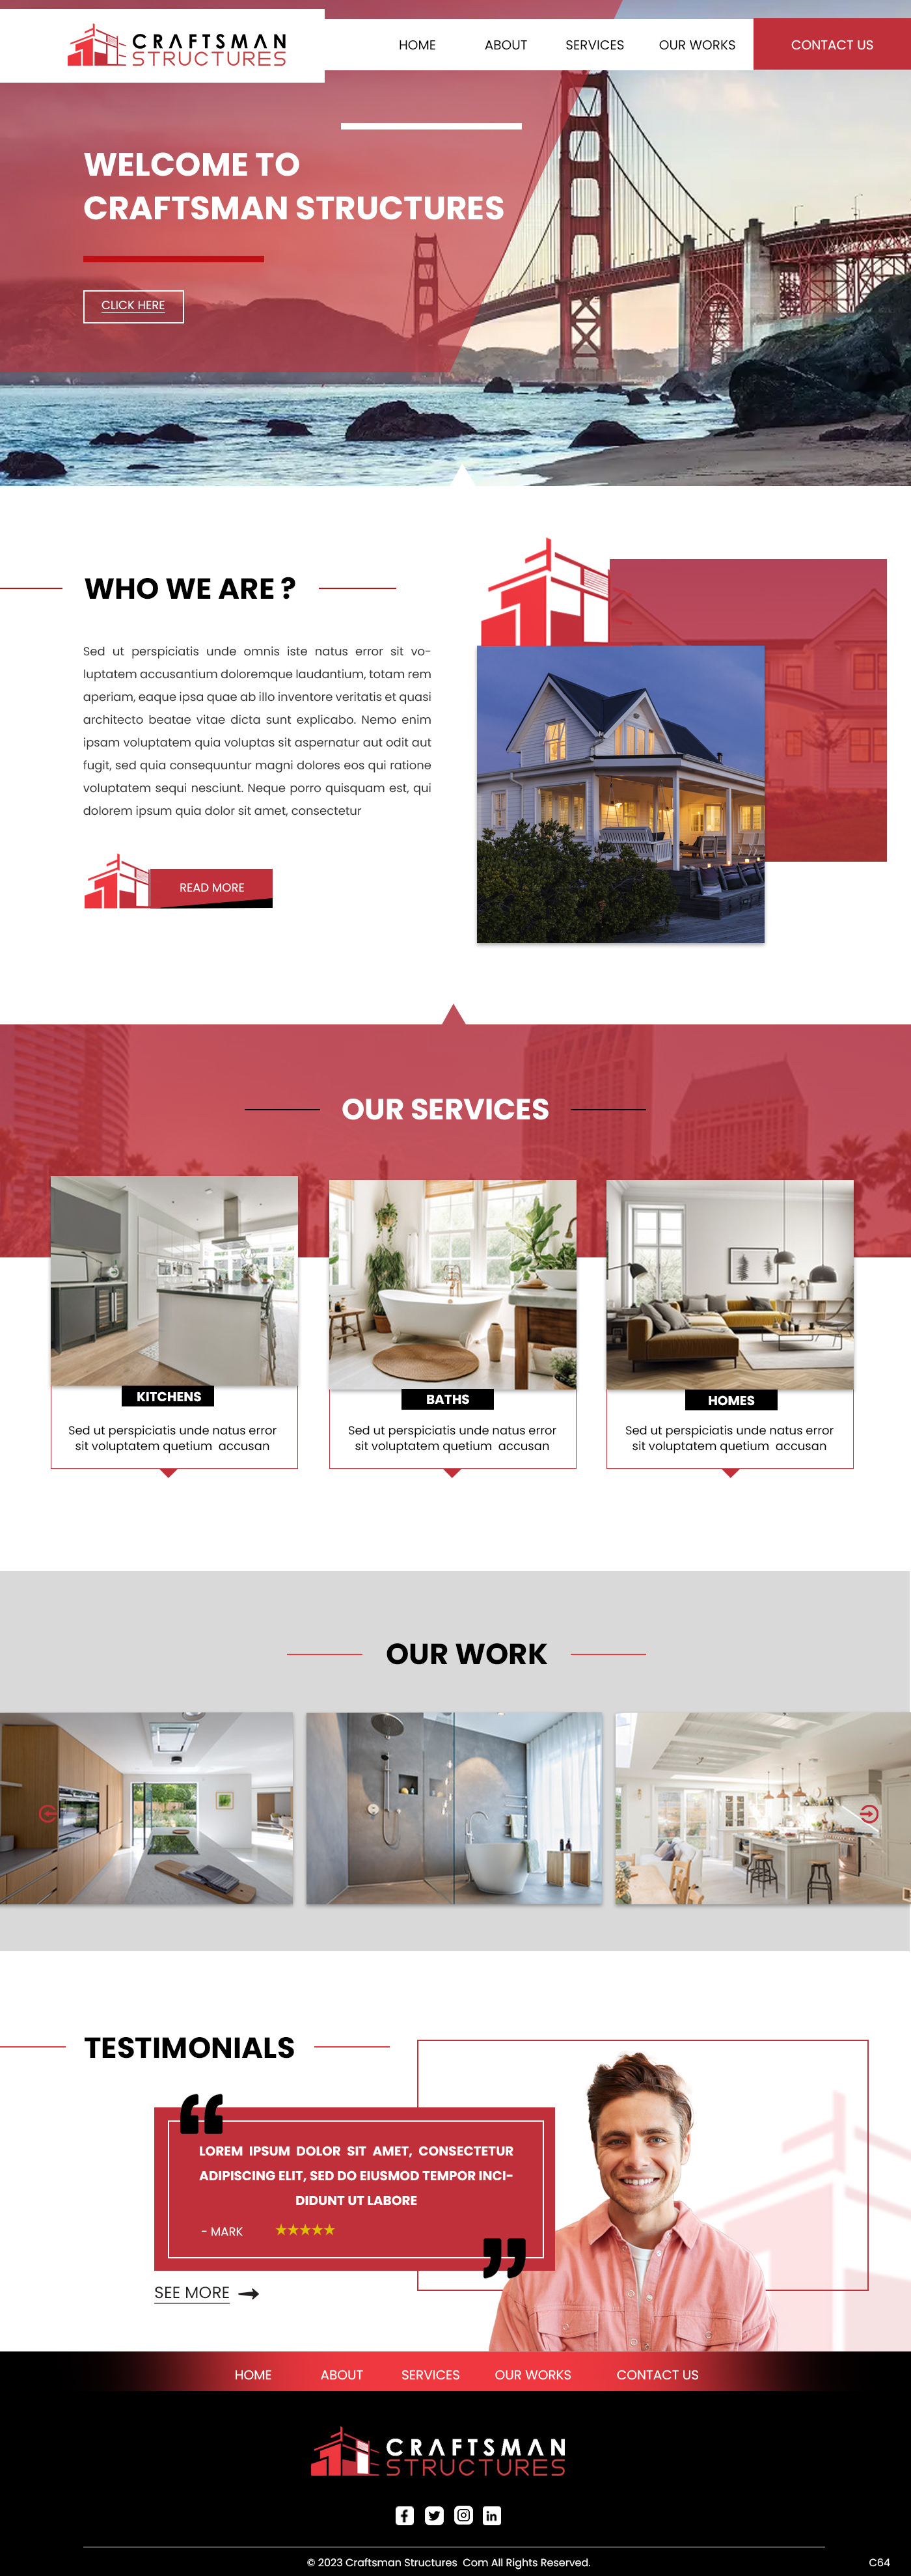 General contractor website design example